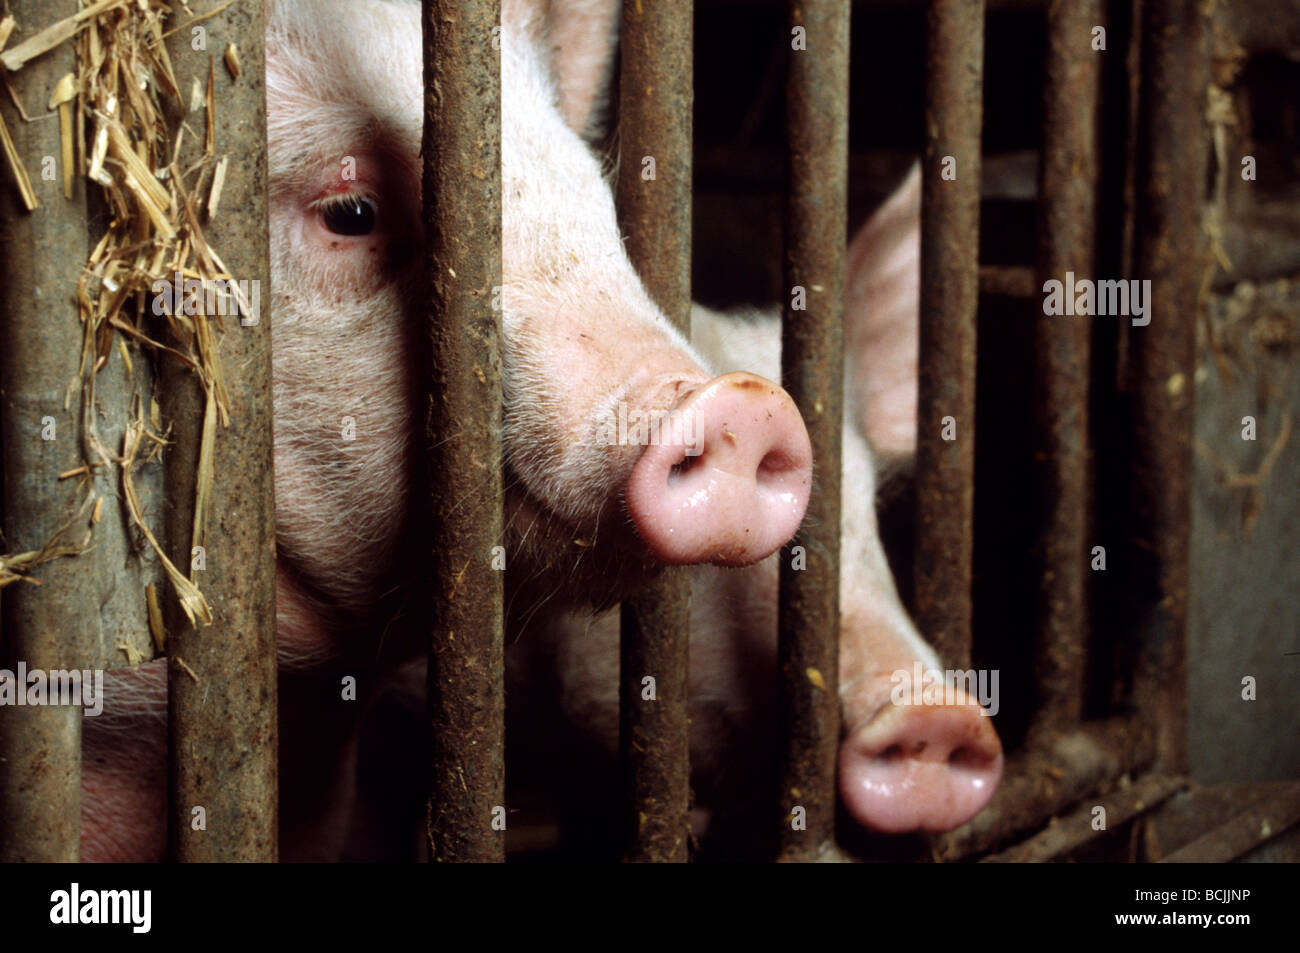 Industria agrícola tras las rejas: cerdos adultos maltratados y abandonados Foto de stock